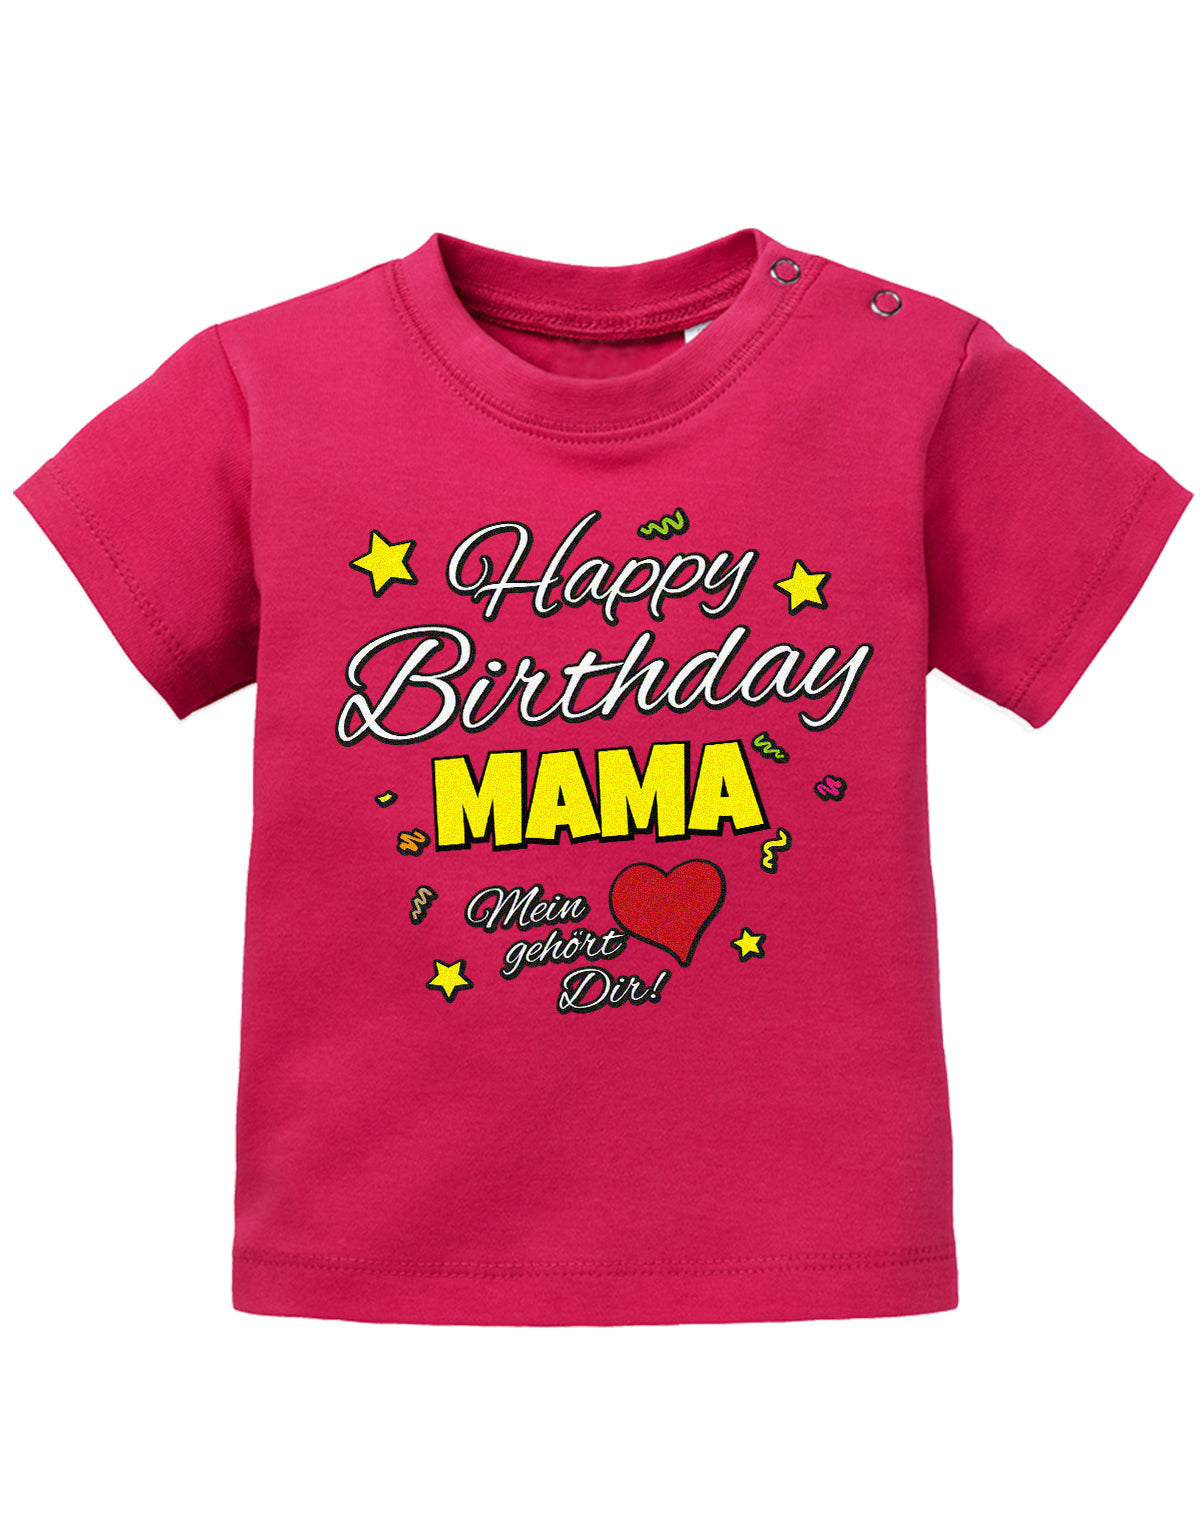 Mama Spruch Baby Shirt. Happy Birthday Mama, Mein Herz gehört dir. Sorbet